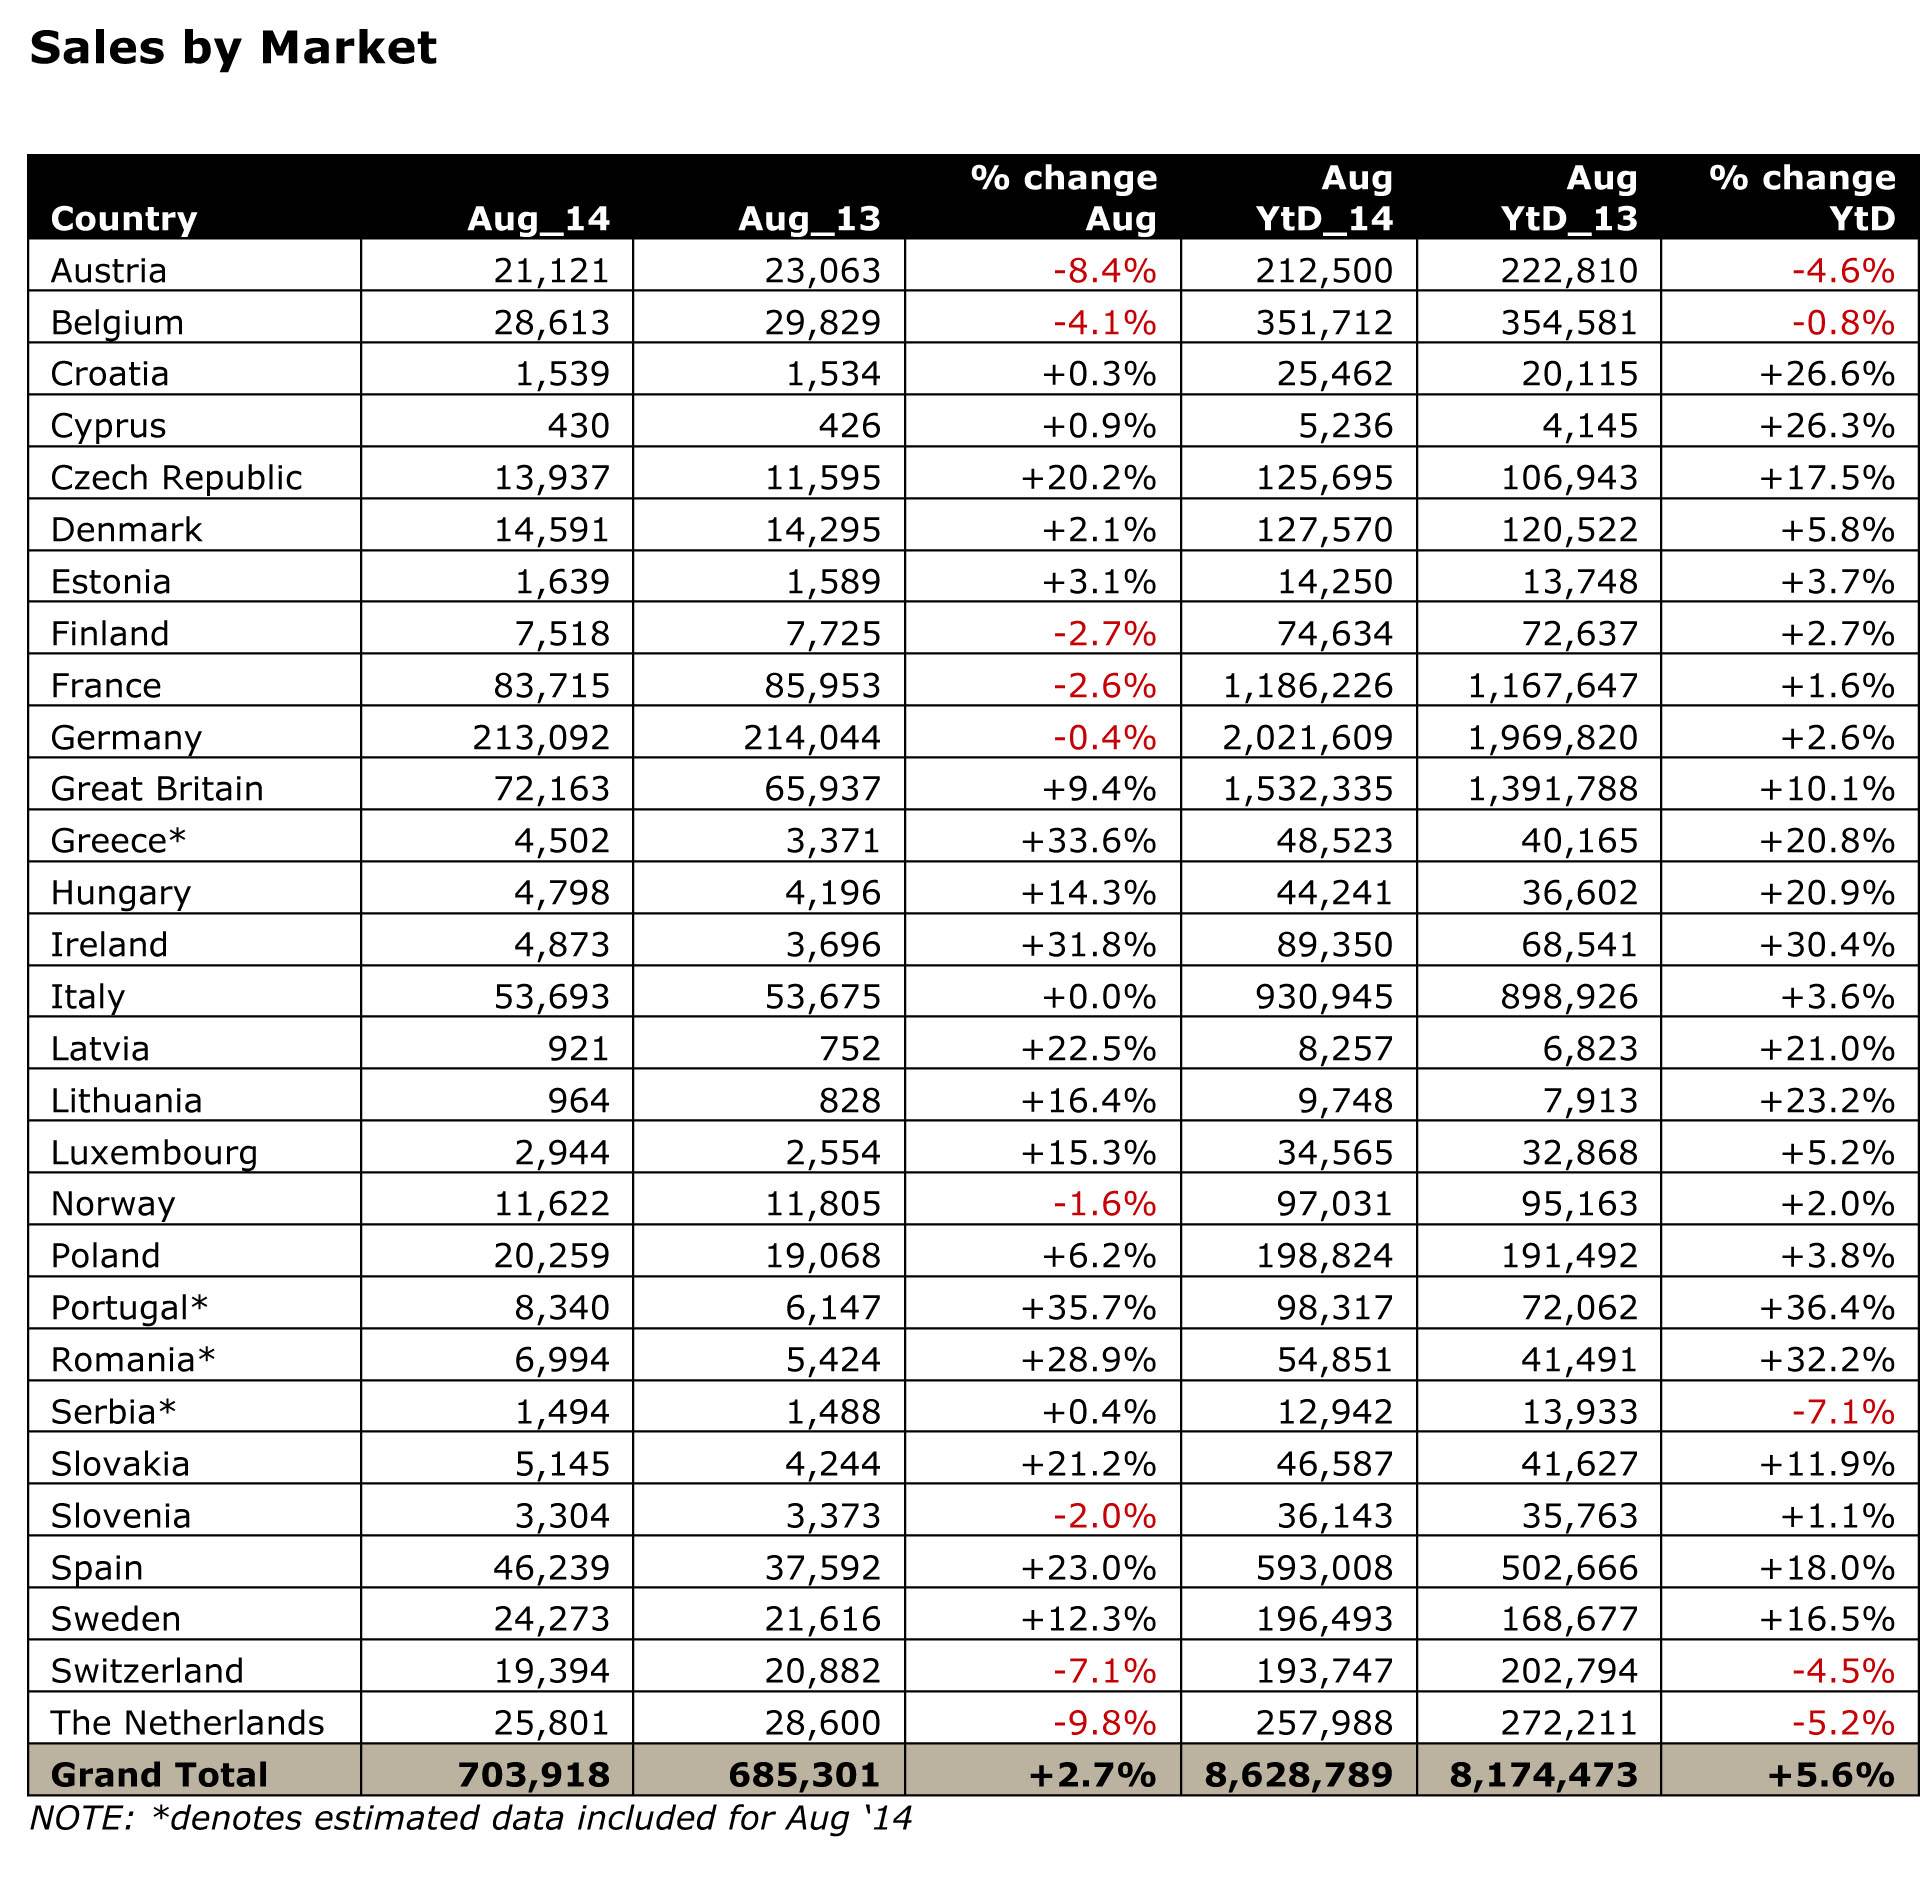 sales-by-market-jato-august-2014